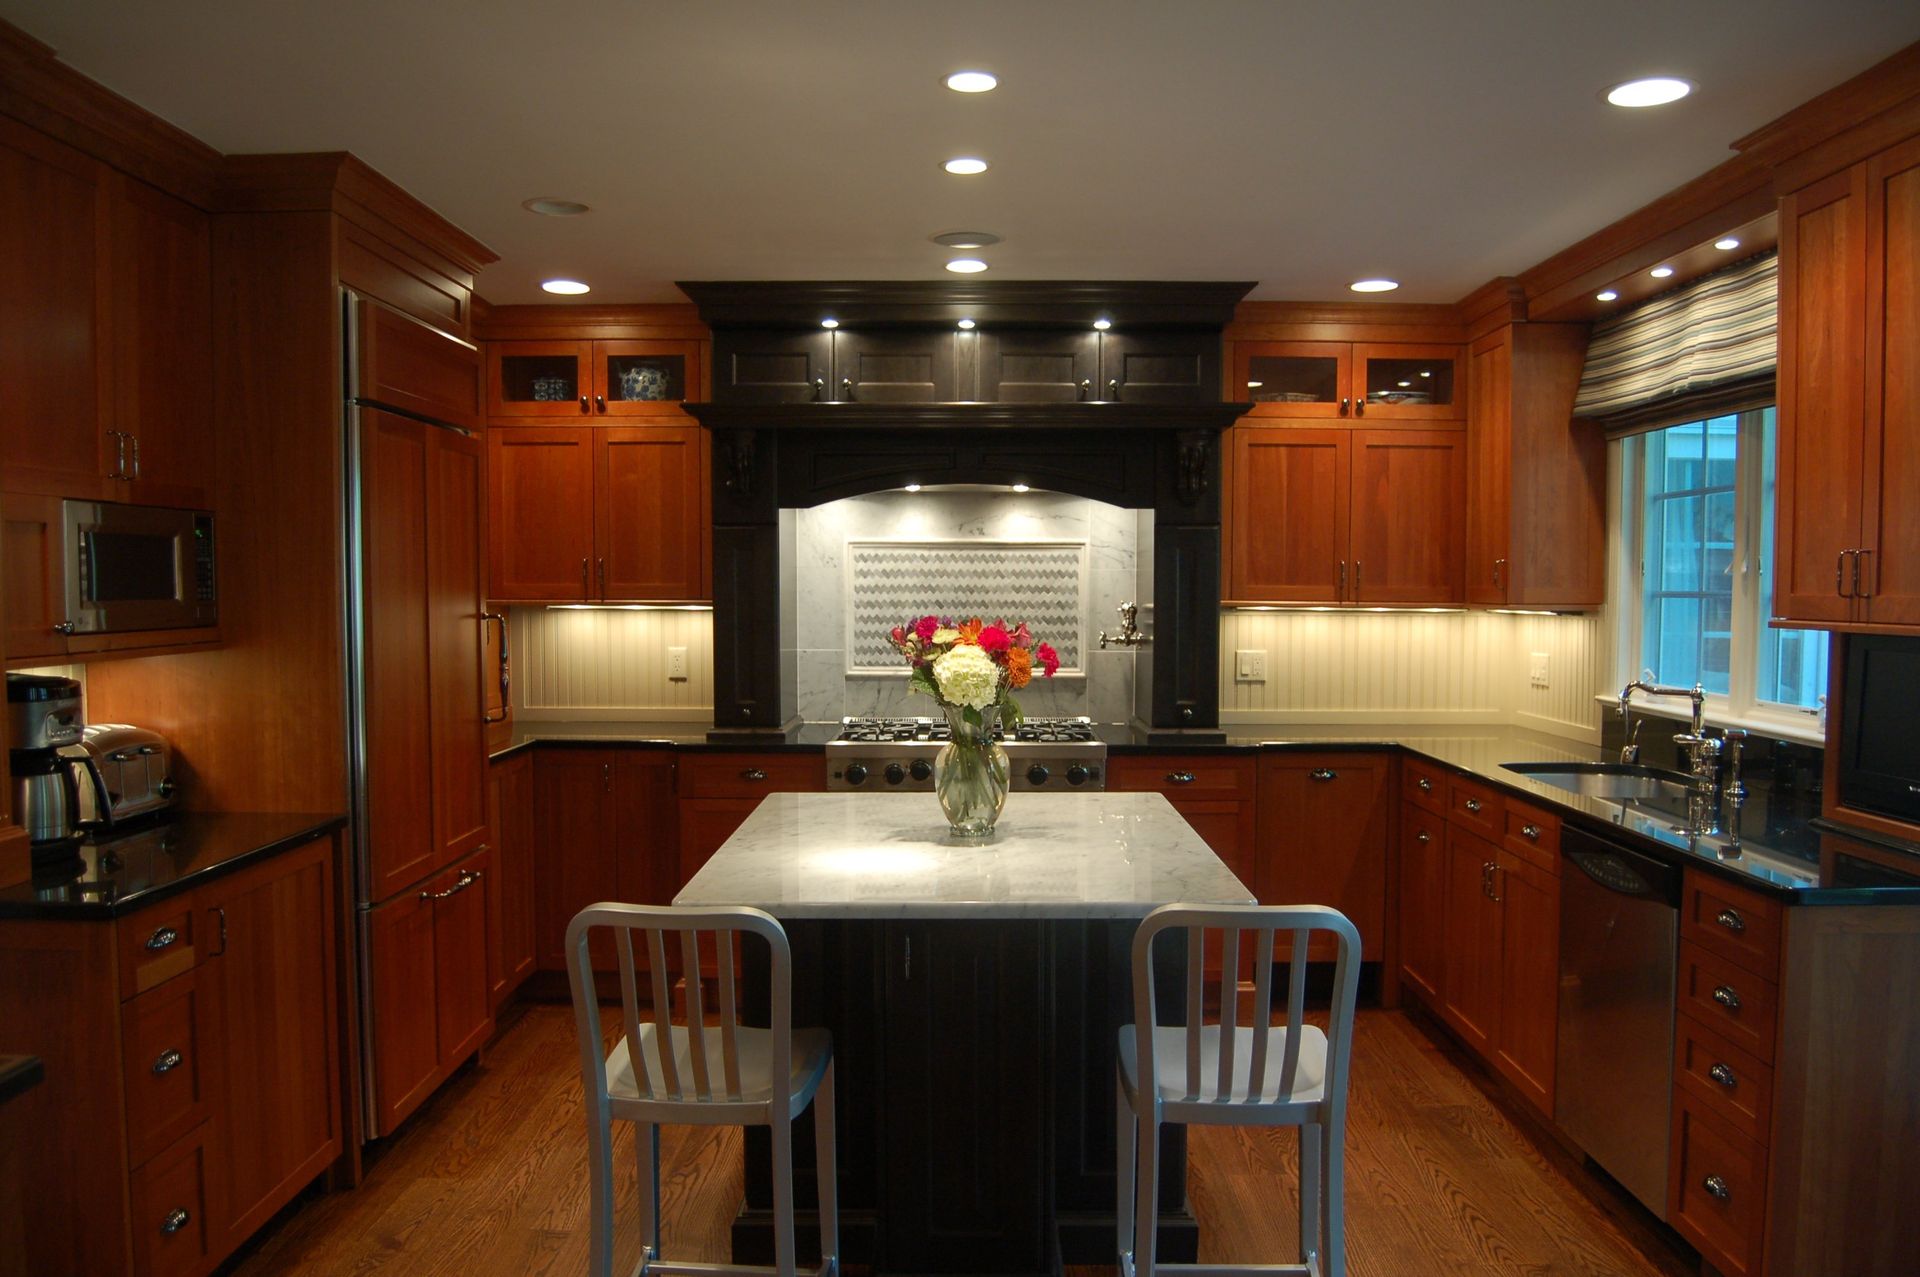 Updated kitchen with dark wooden cabinets